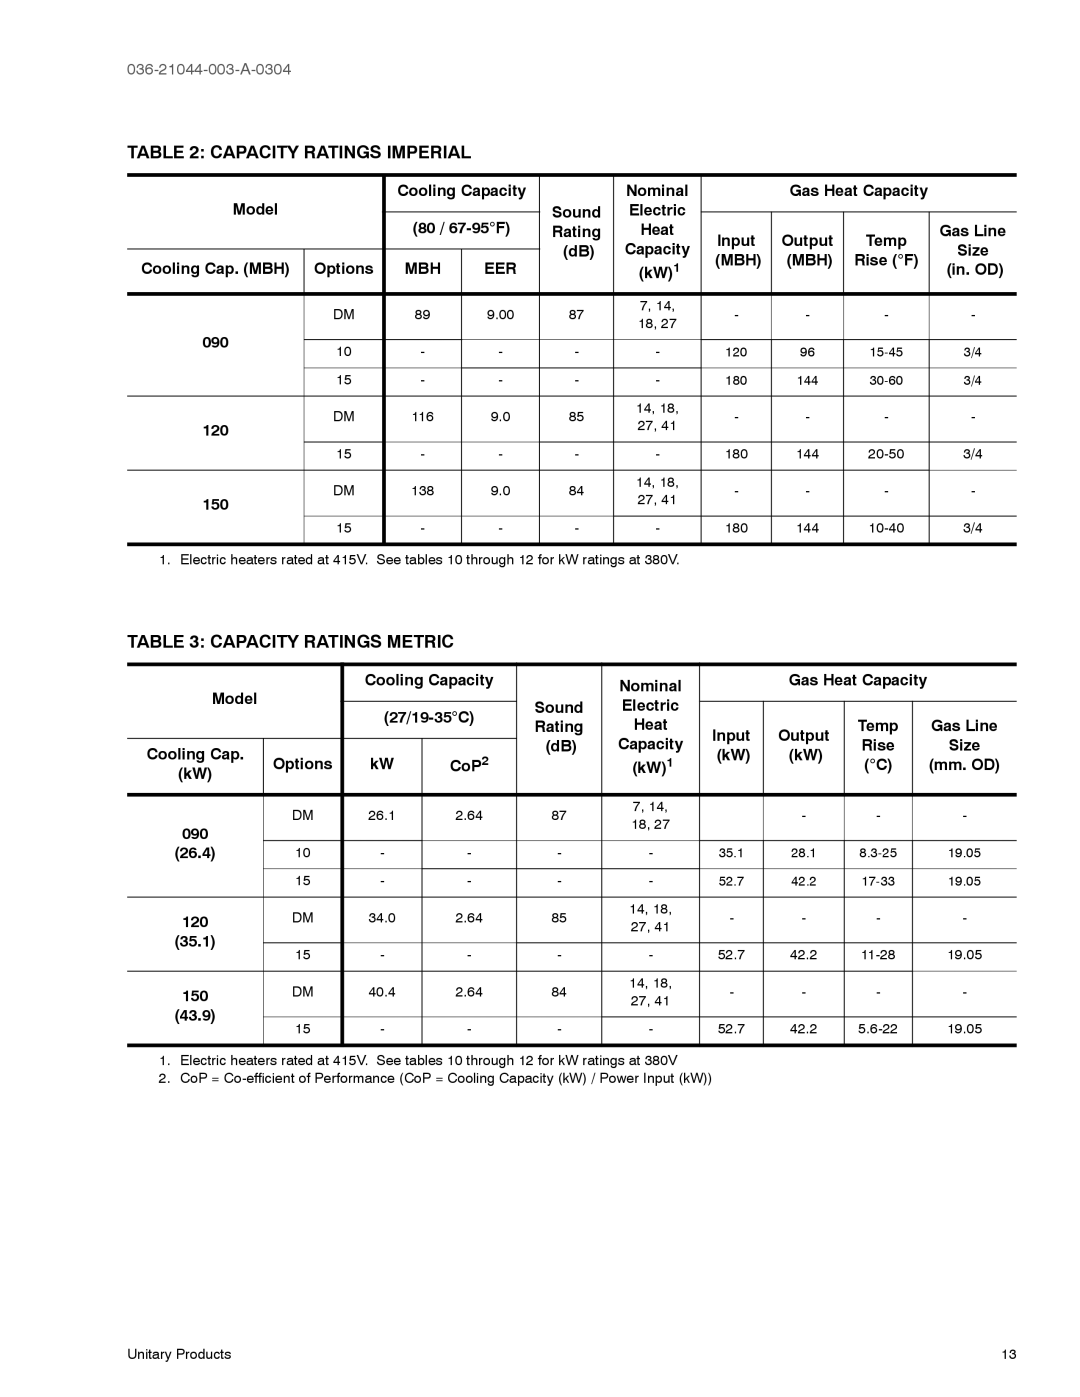 York DM120, DM150 manual Capacity Ratings Imperial, Capacity Ratings Metric, 036-21044-003-A-0304 